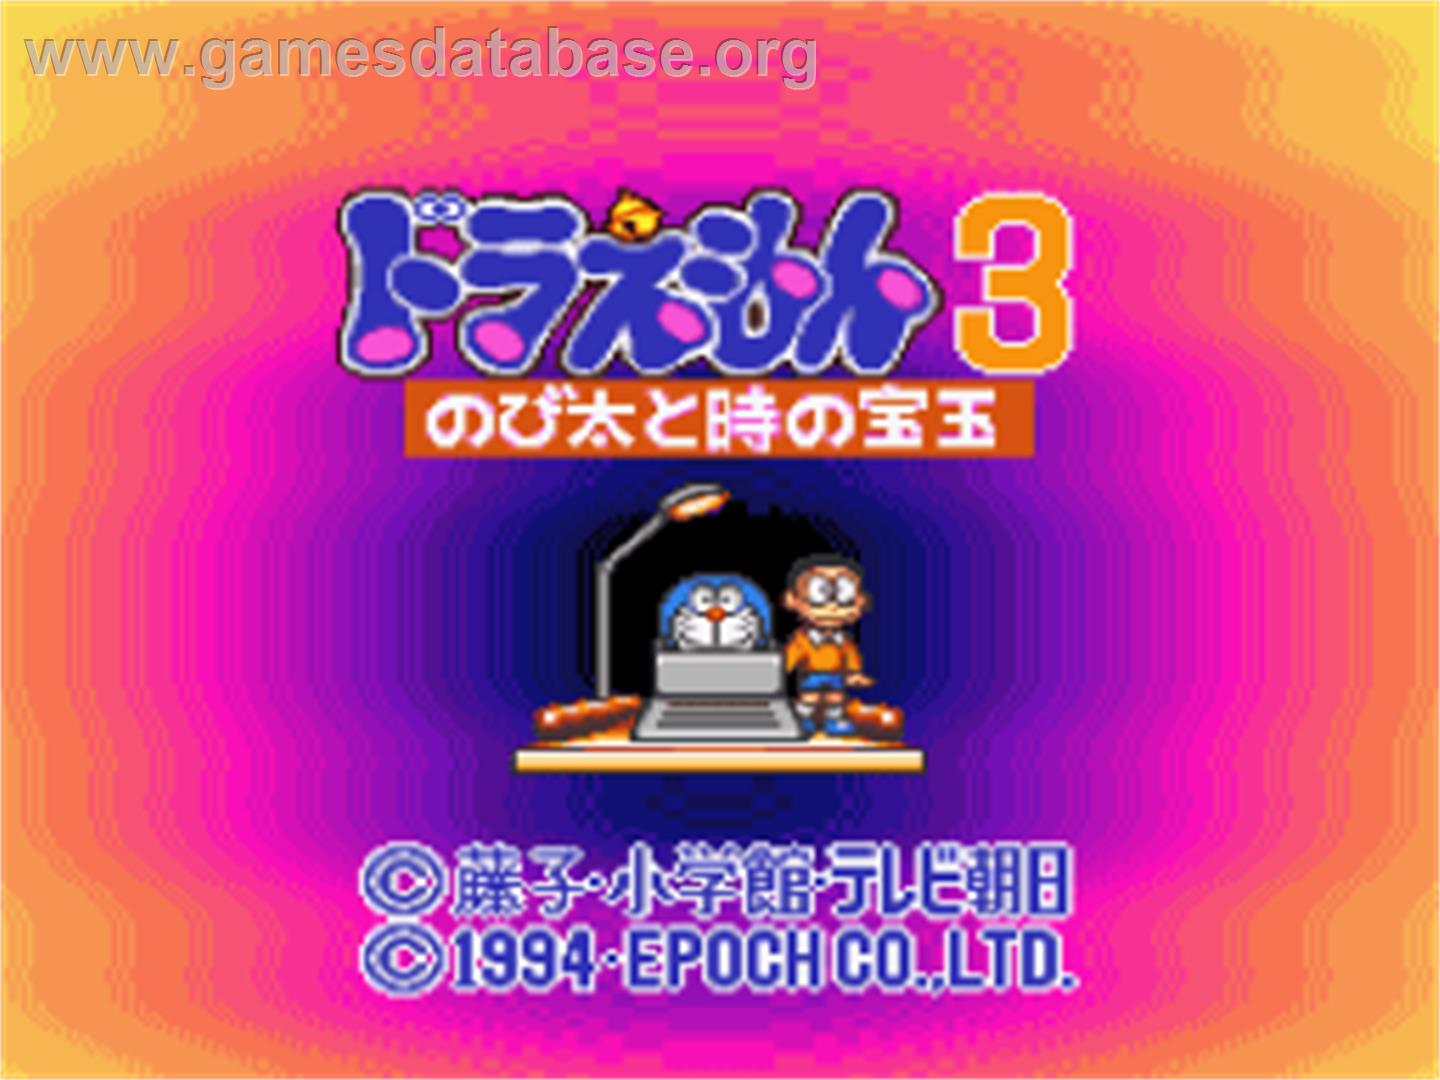 Doraemon 3: Nobita to Toki no Hougyoku - Nintendo SNES - Artwork - Title Screen